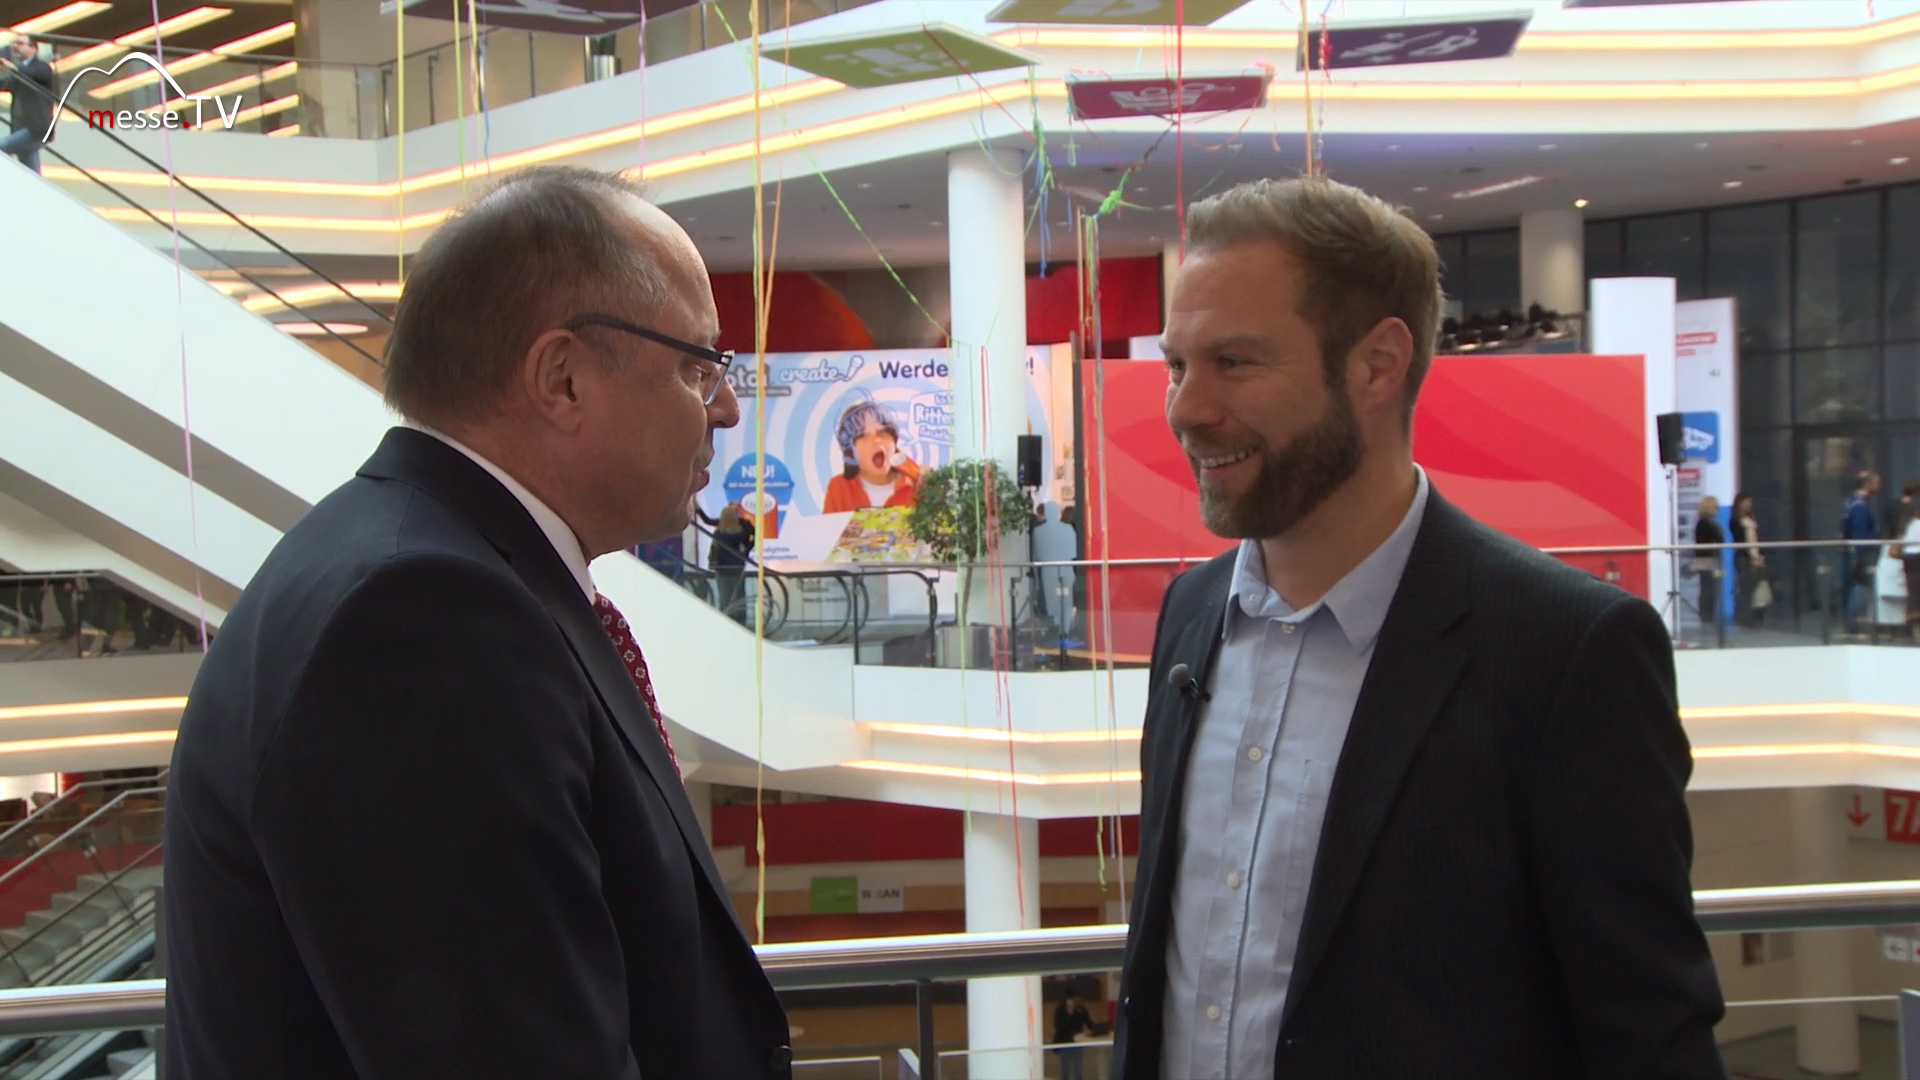 MesseTV interview Spielwarenmesse 2018 chairman Ernst Kick